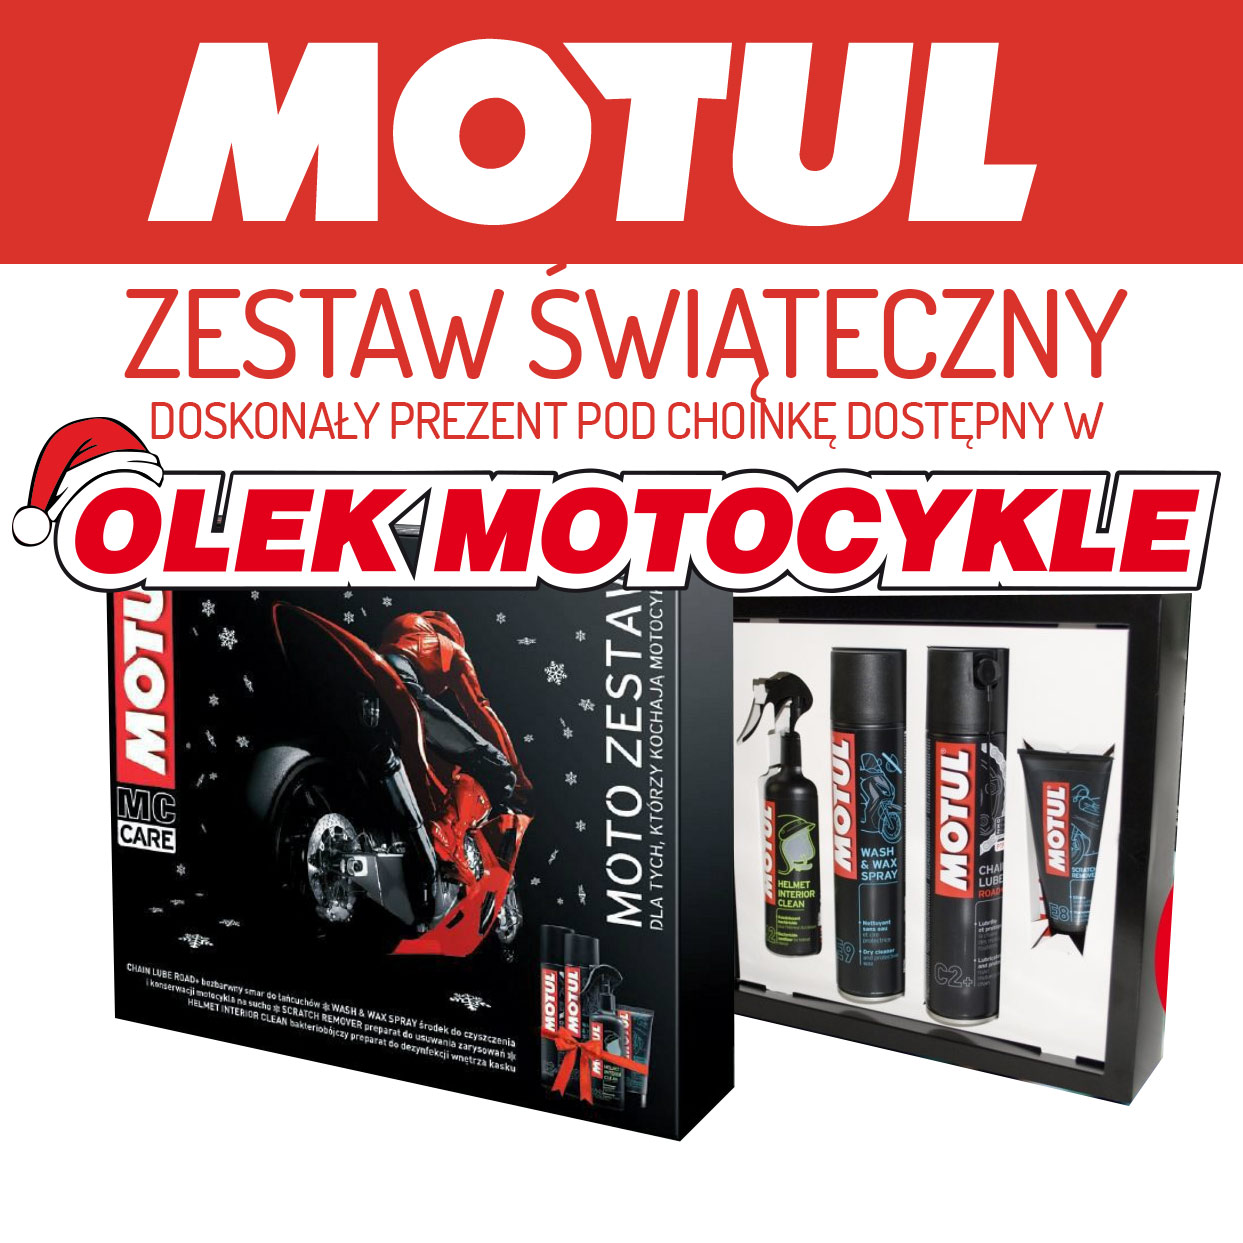 MOTUL_MOTO_ZESTAW_SWIATECZNY